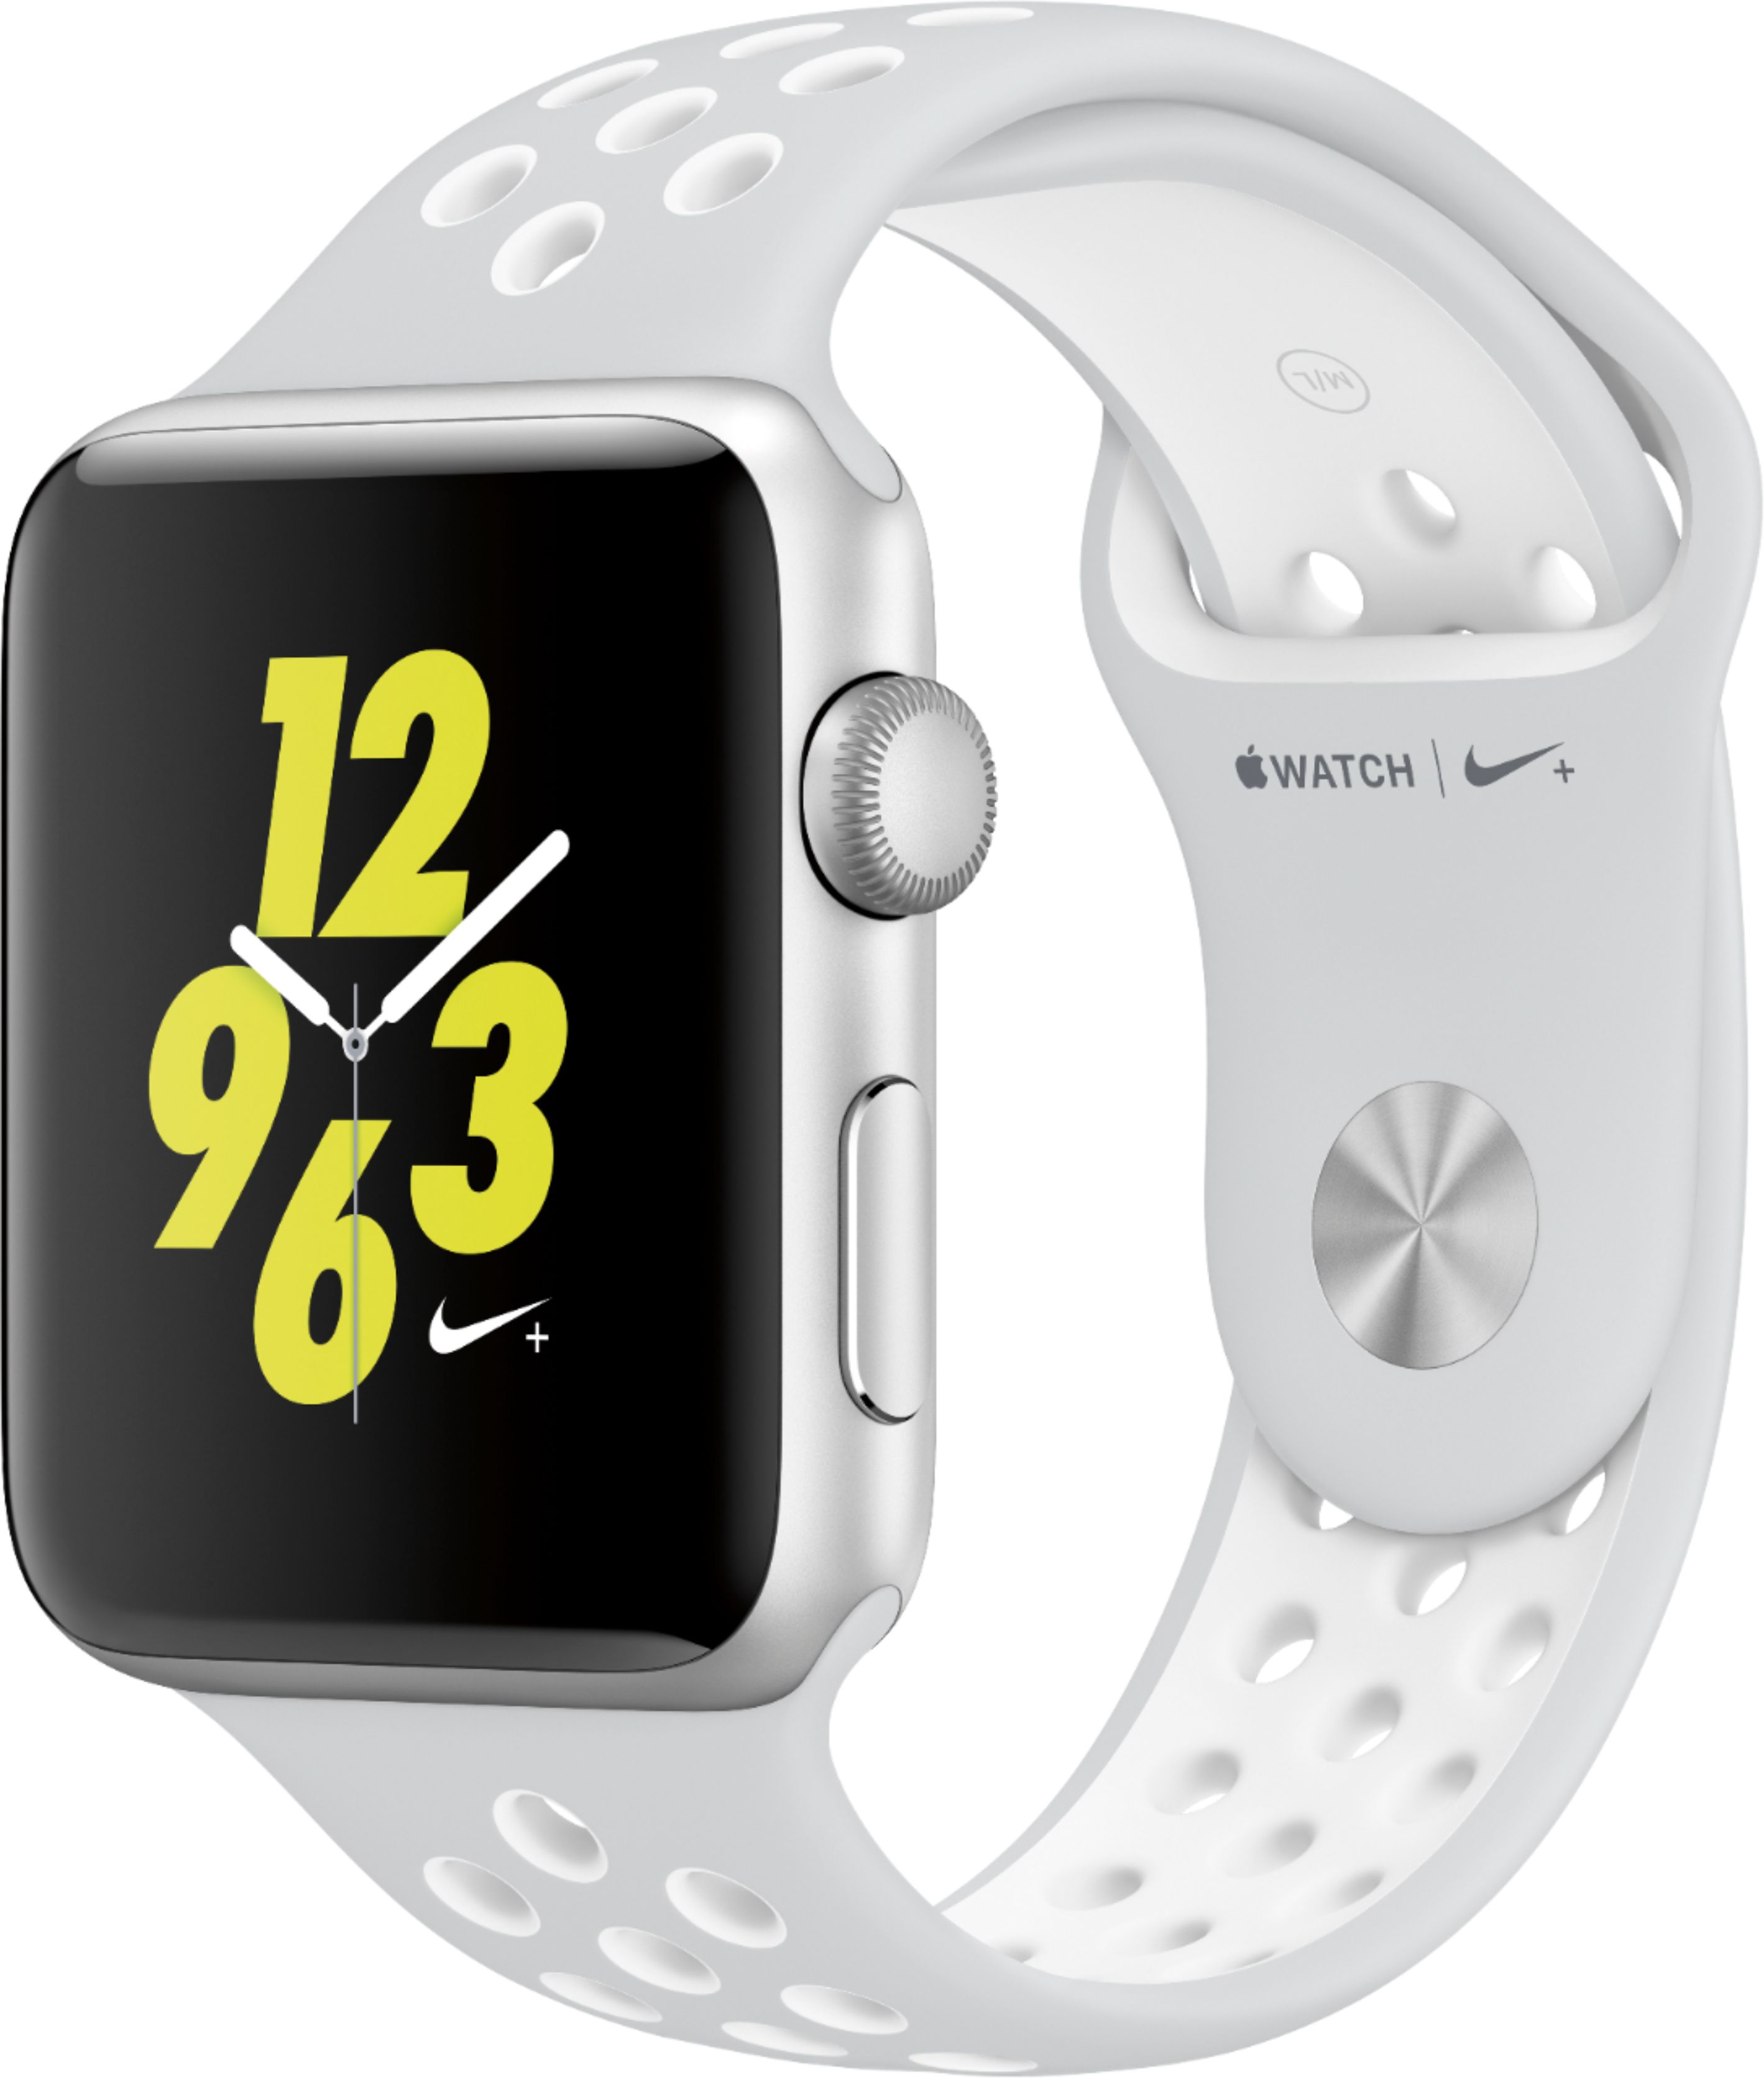 Best Buy: Apple Apple Watch Nike+ 42mm Silver Aluminum Case Pure